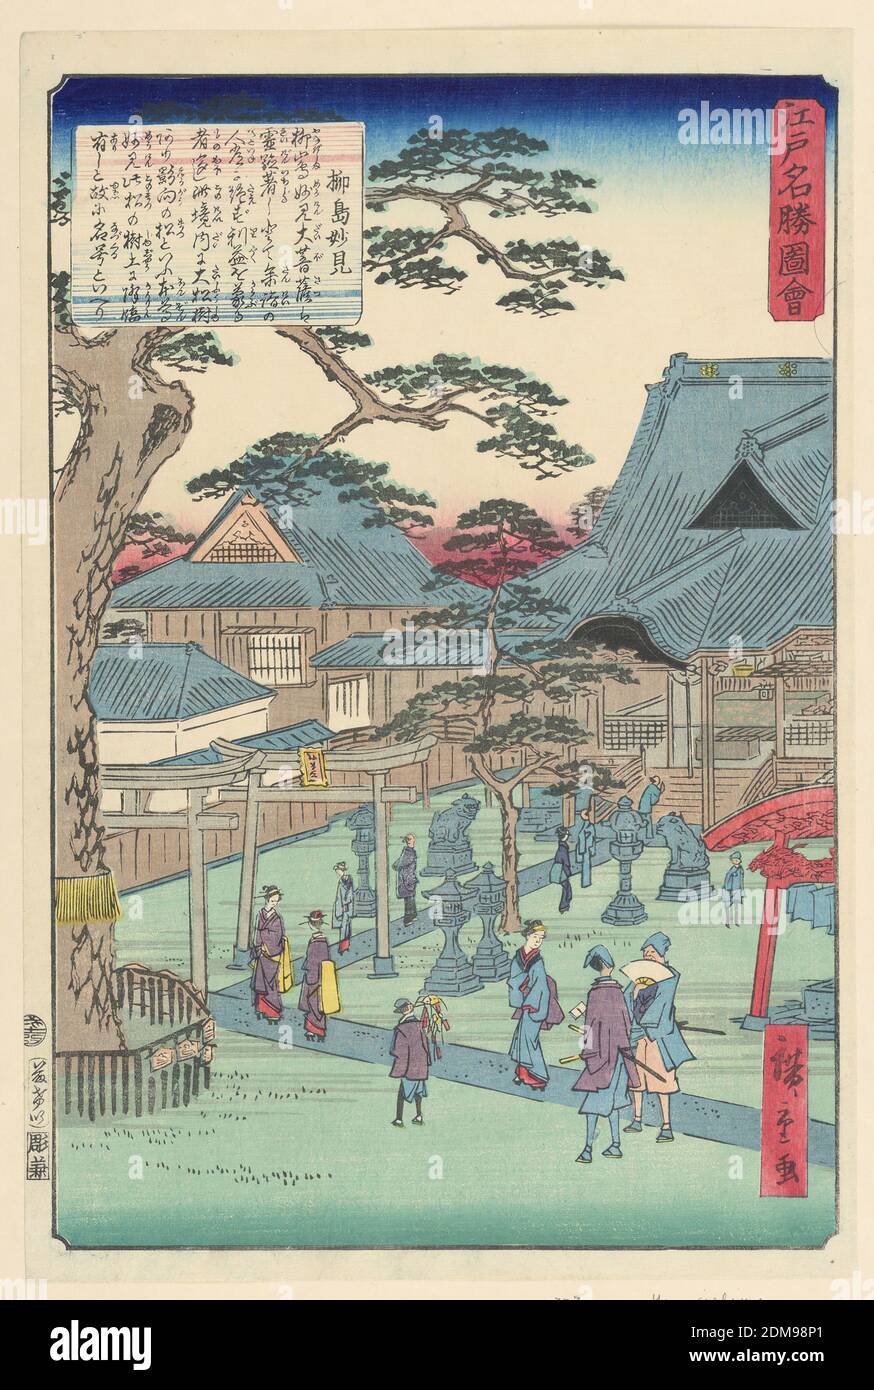 City View, Ando Hiroshige, japanisch, 1797–1858, Holzschnitt in farbiger Tinte auf Papier, im Vordergrund zwei Samurai, die eine schöne Frau in den Blick bekommen. Ein junger Mann ist ein paar Meter entfernt, der einige Waren in der Hoffnung auf Passanten, einige Souvenirs zu kaufen. Zwei gleichpassende Frauen gehen auf dem Weg zum Eingang eines Gebäudes hin. Diese Vogelperspektive zeigt die dichte architektonische Struktur der Stadt., Japan, 1797-1858, Landschaften, Print Stockfoto